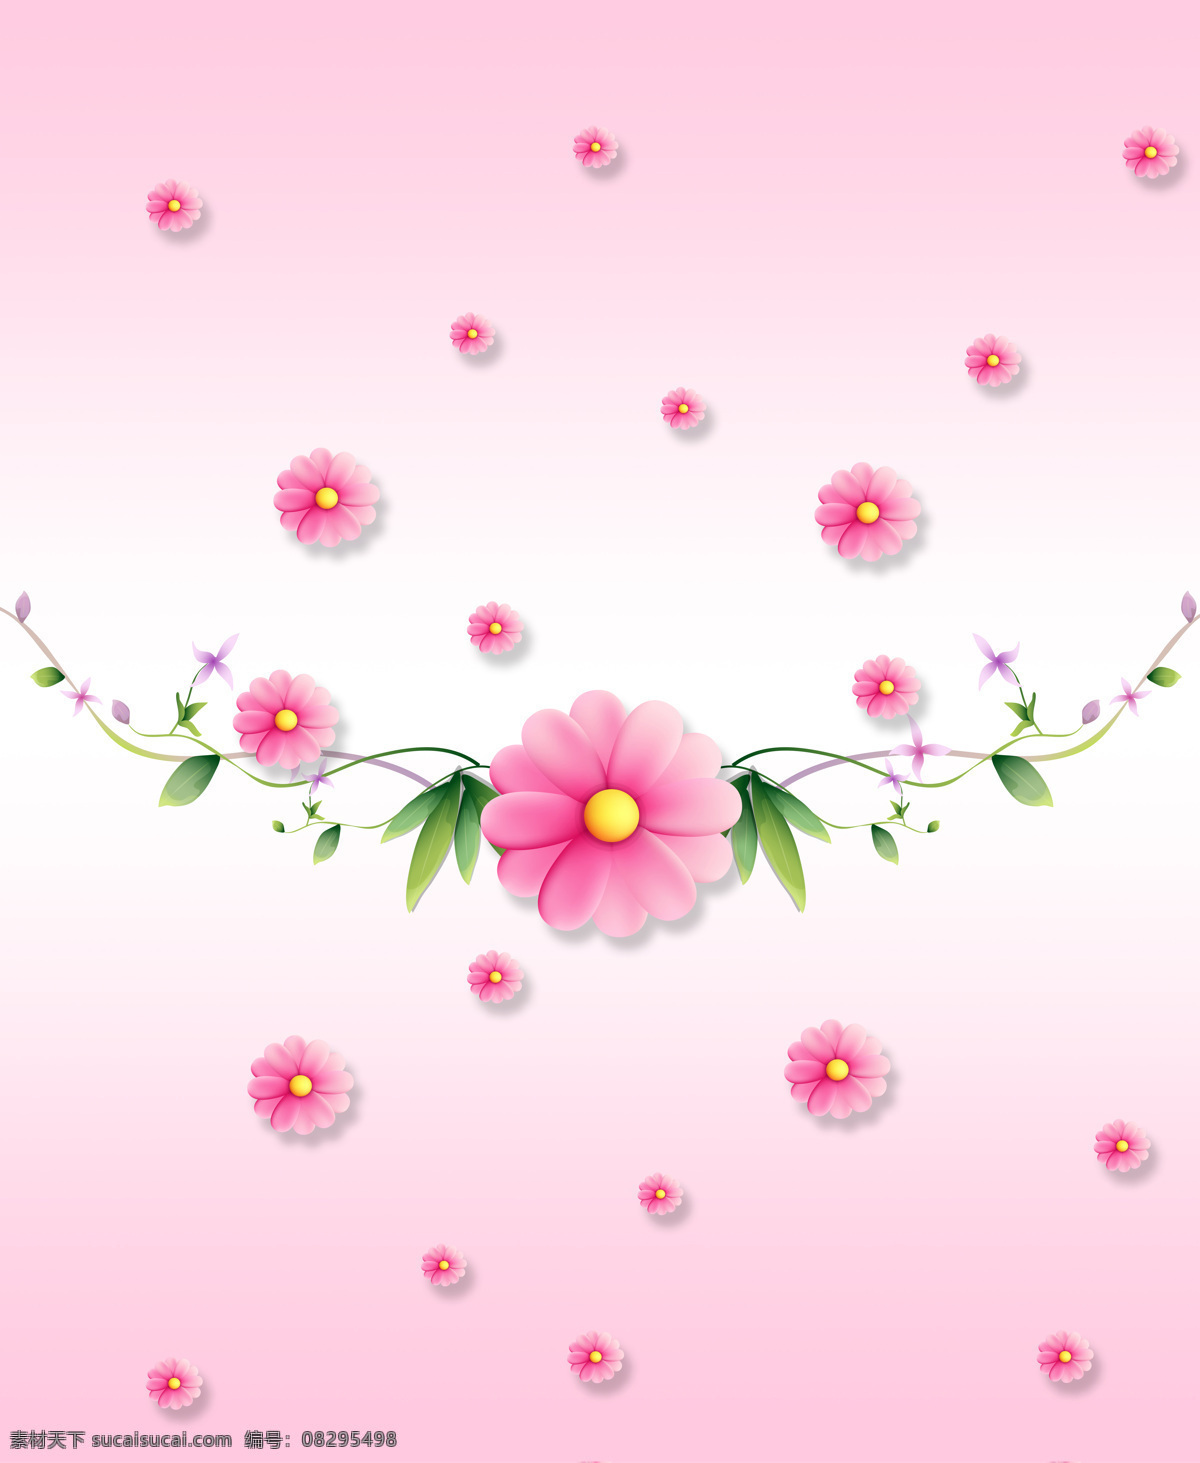 粉色花朵 小花 藤条 叶子 粉色背景 花藤 简洁 手绘花朵 花边 时尚 移门 设计素材 移门图案 底纹边框